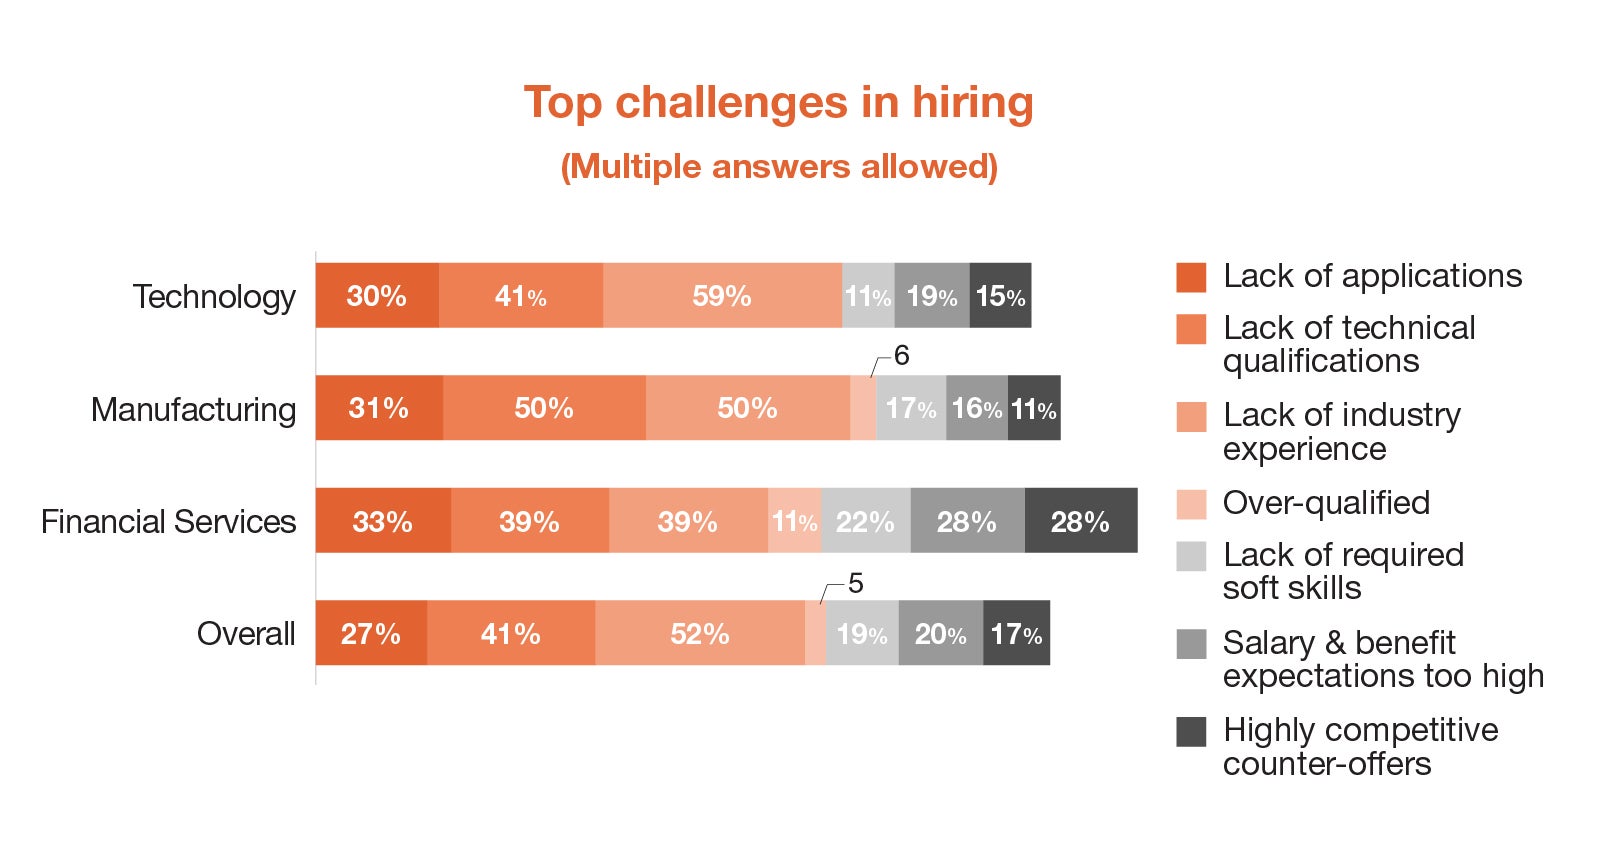 Top challenges in hiring